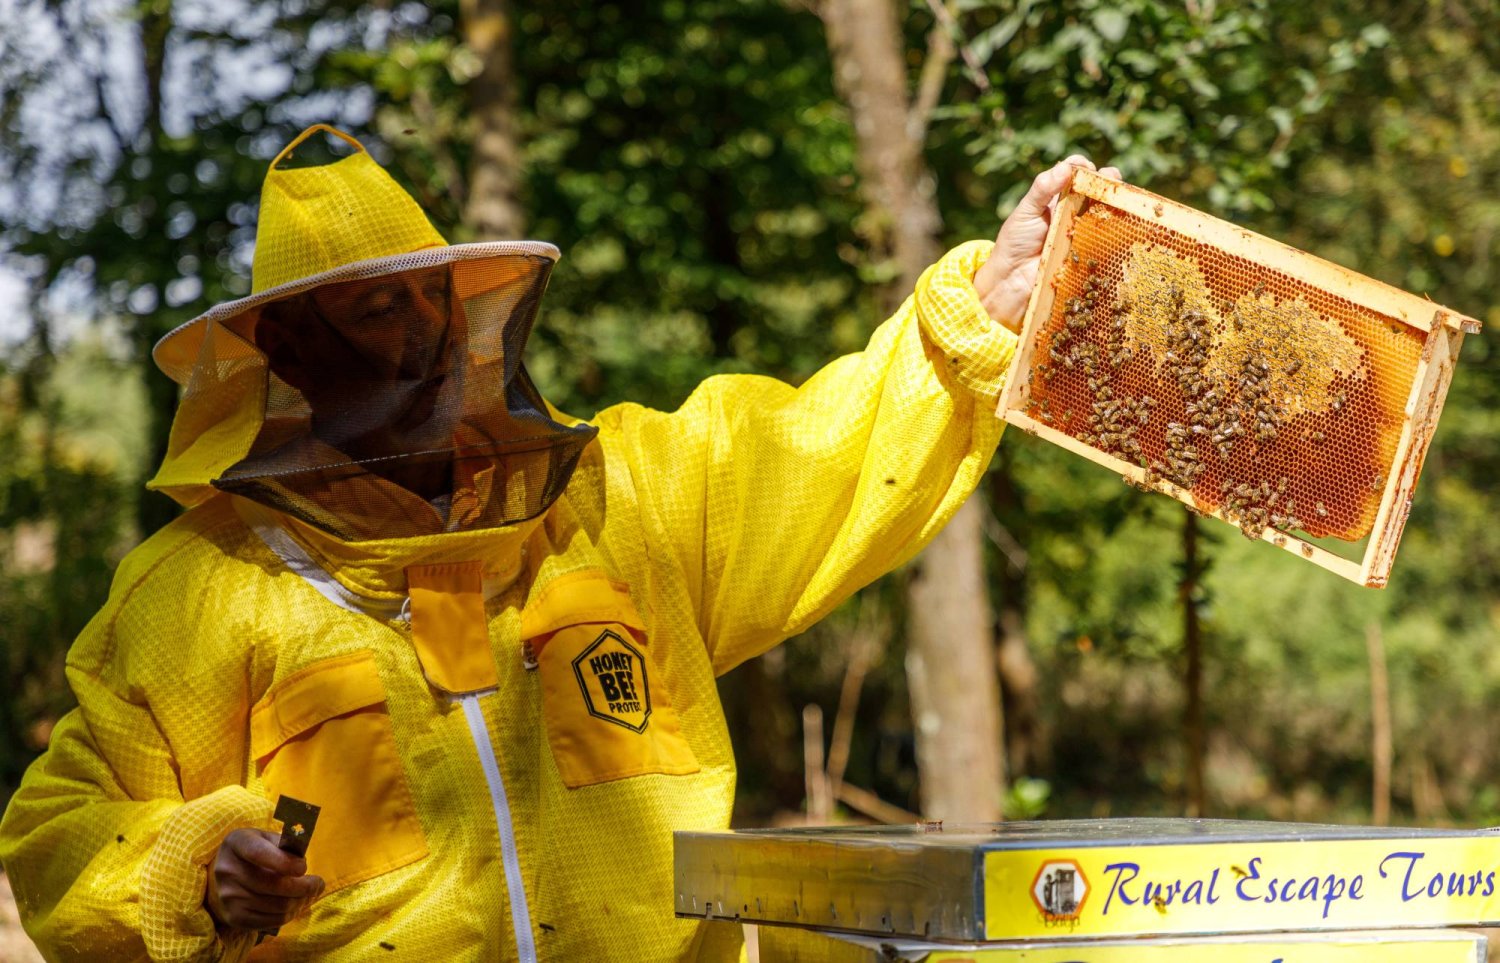 هل صحيح أن العسل يعالج الحساسية الموسمية؟ بحث علمي يجيب